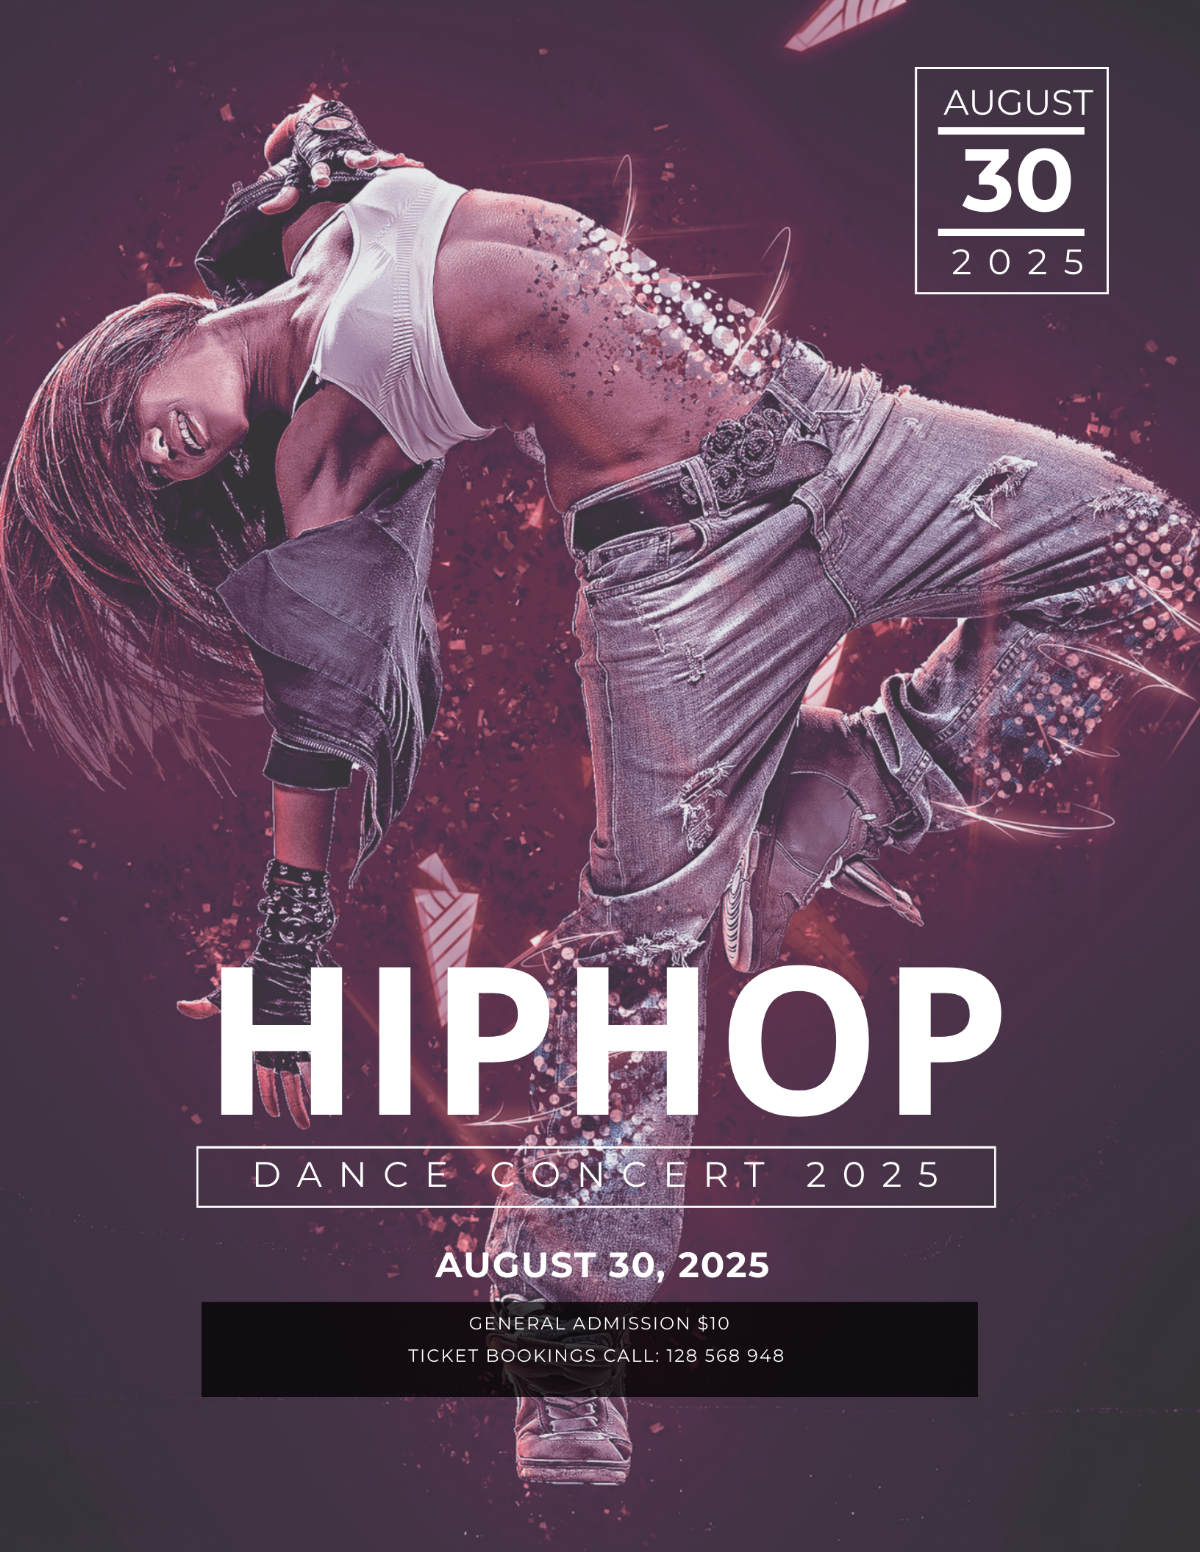 Hip Hop Concert Flyer Template